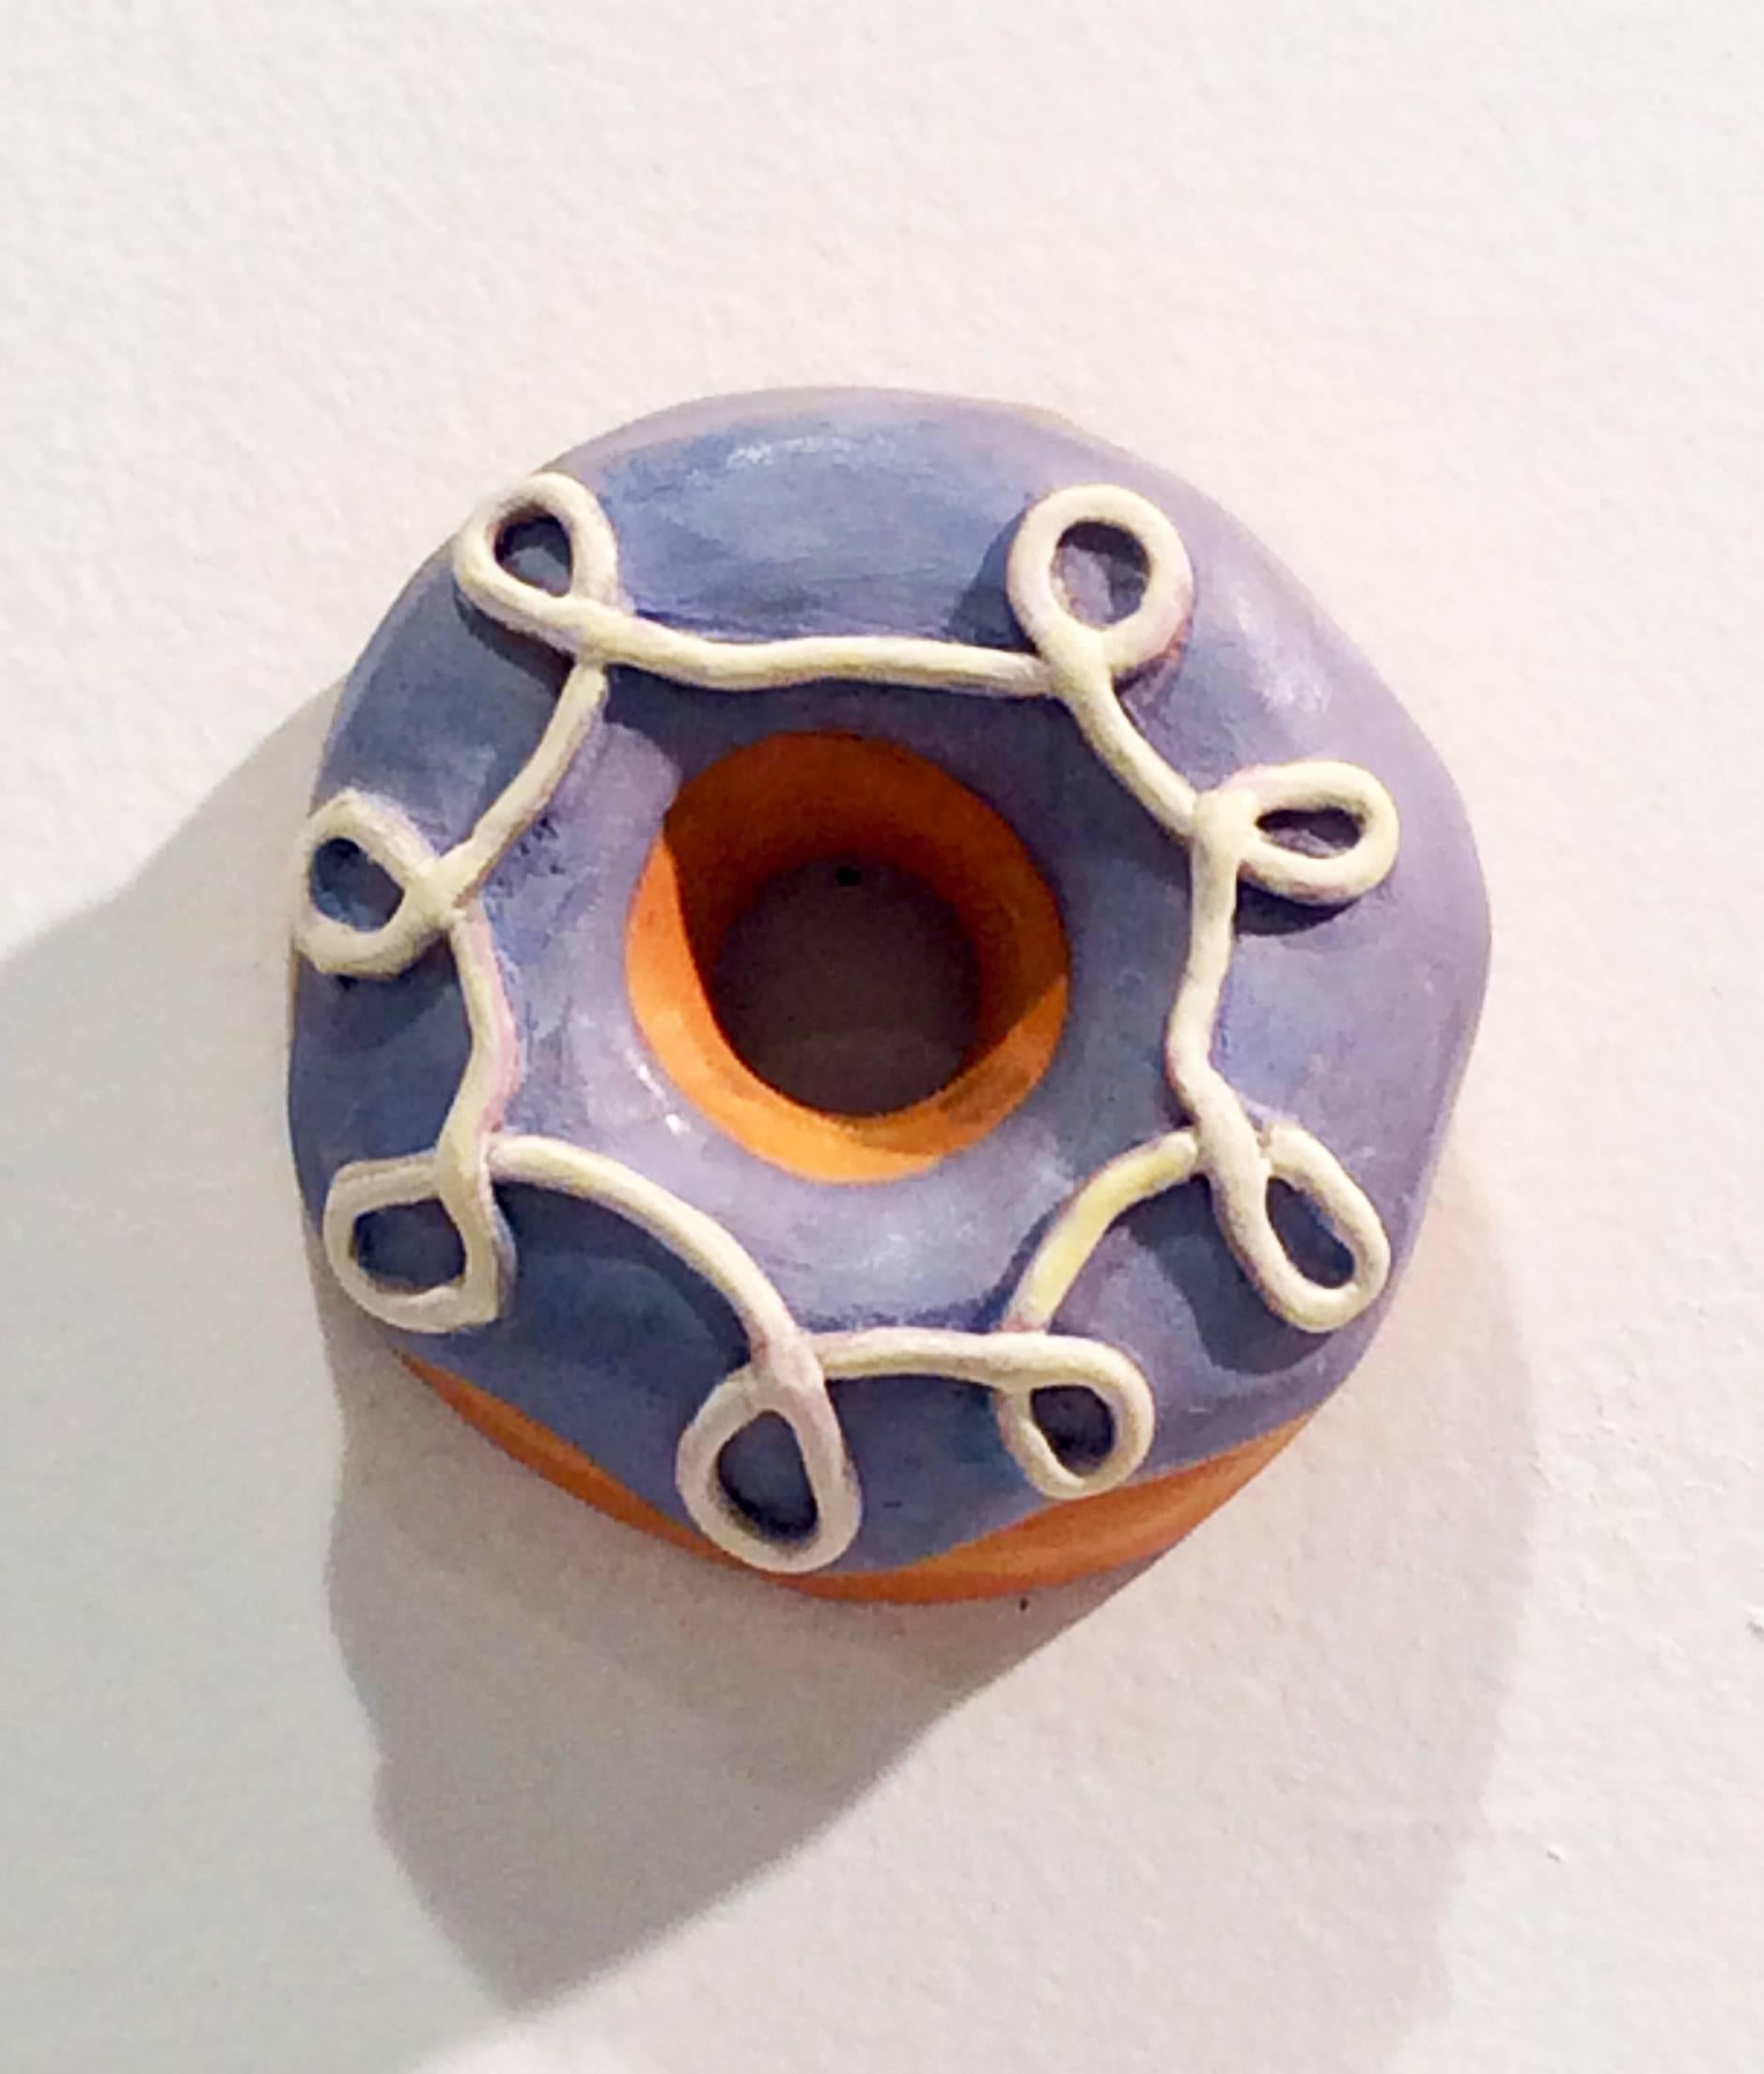 Barbara Fiore Still-Life Sculpture - Donut #16G